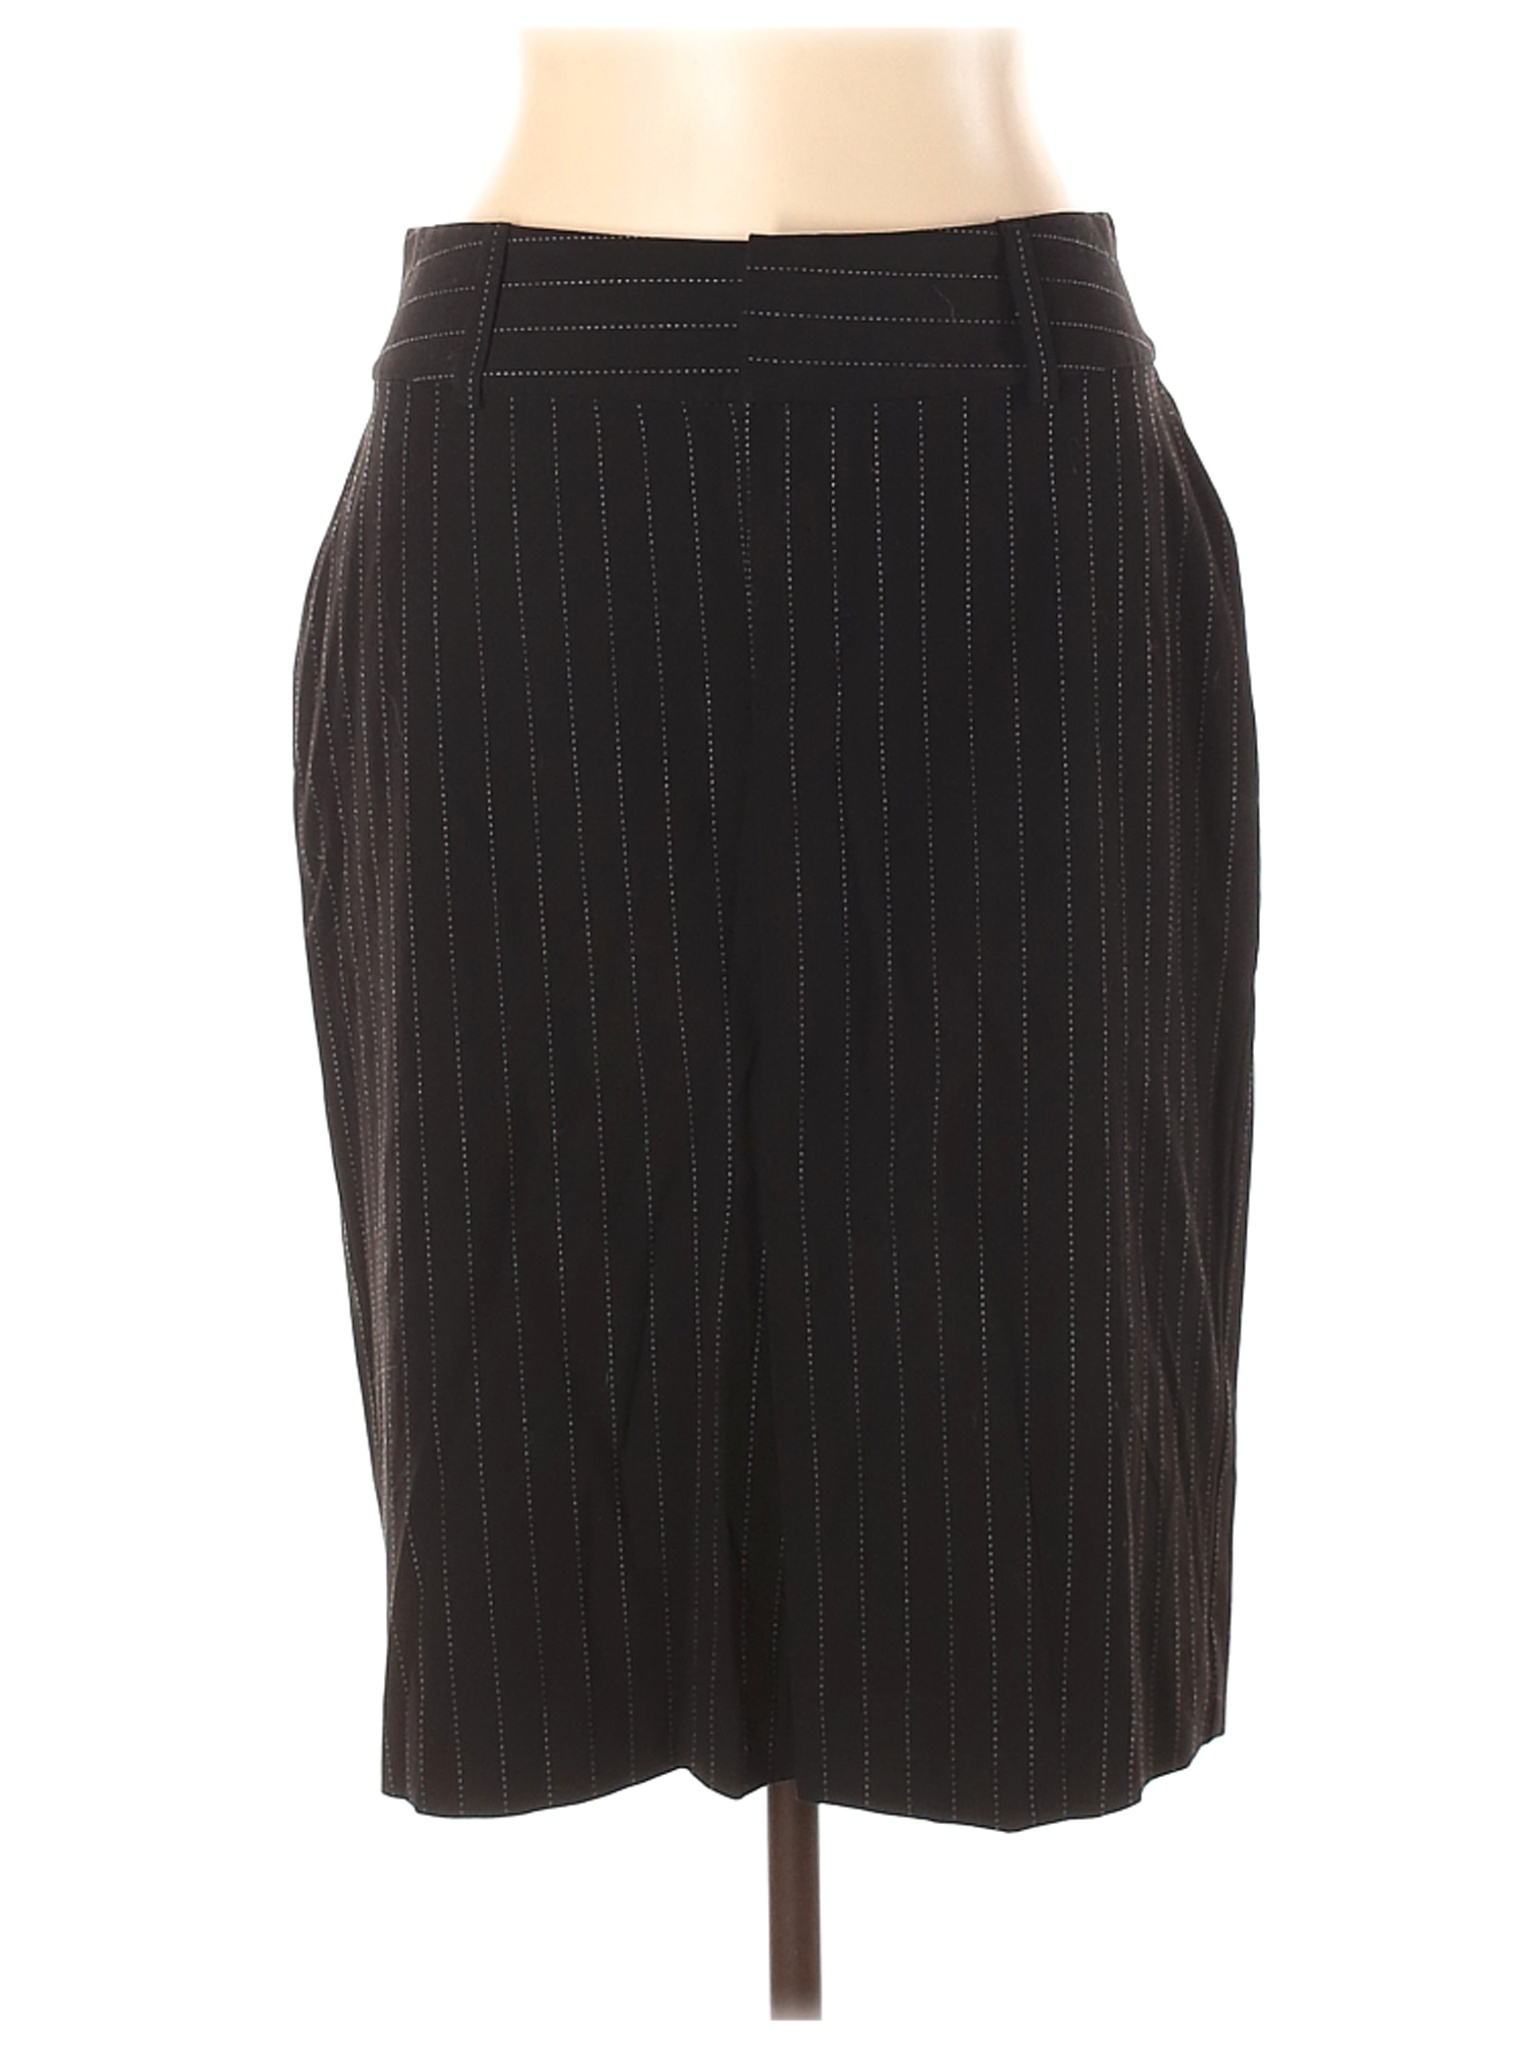 Old Navy Women Black Casual Skirt 10 | eBay